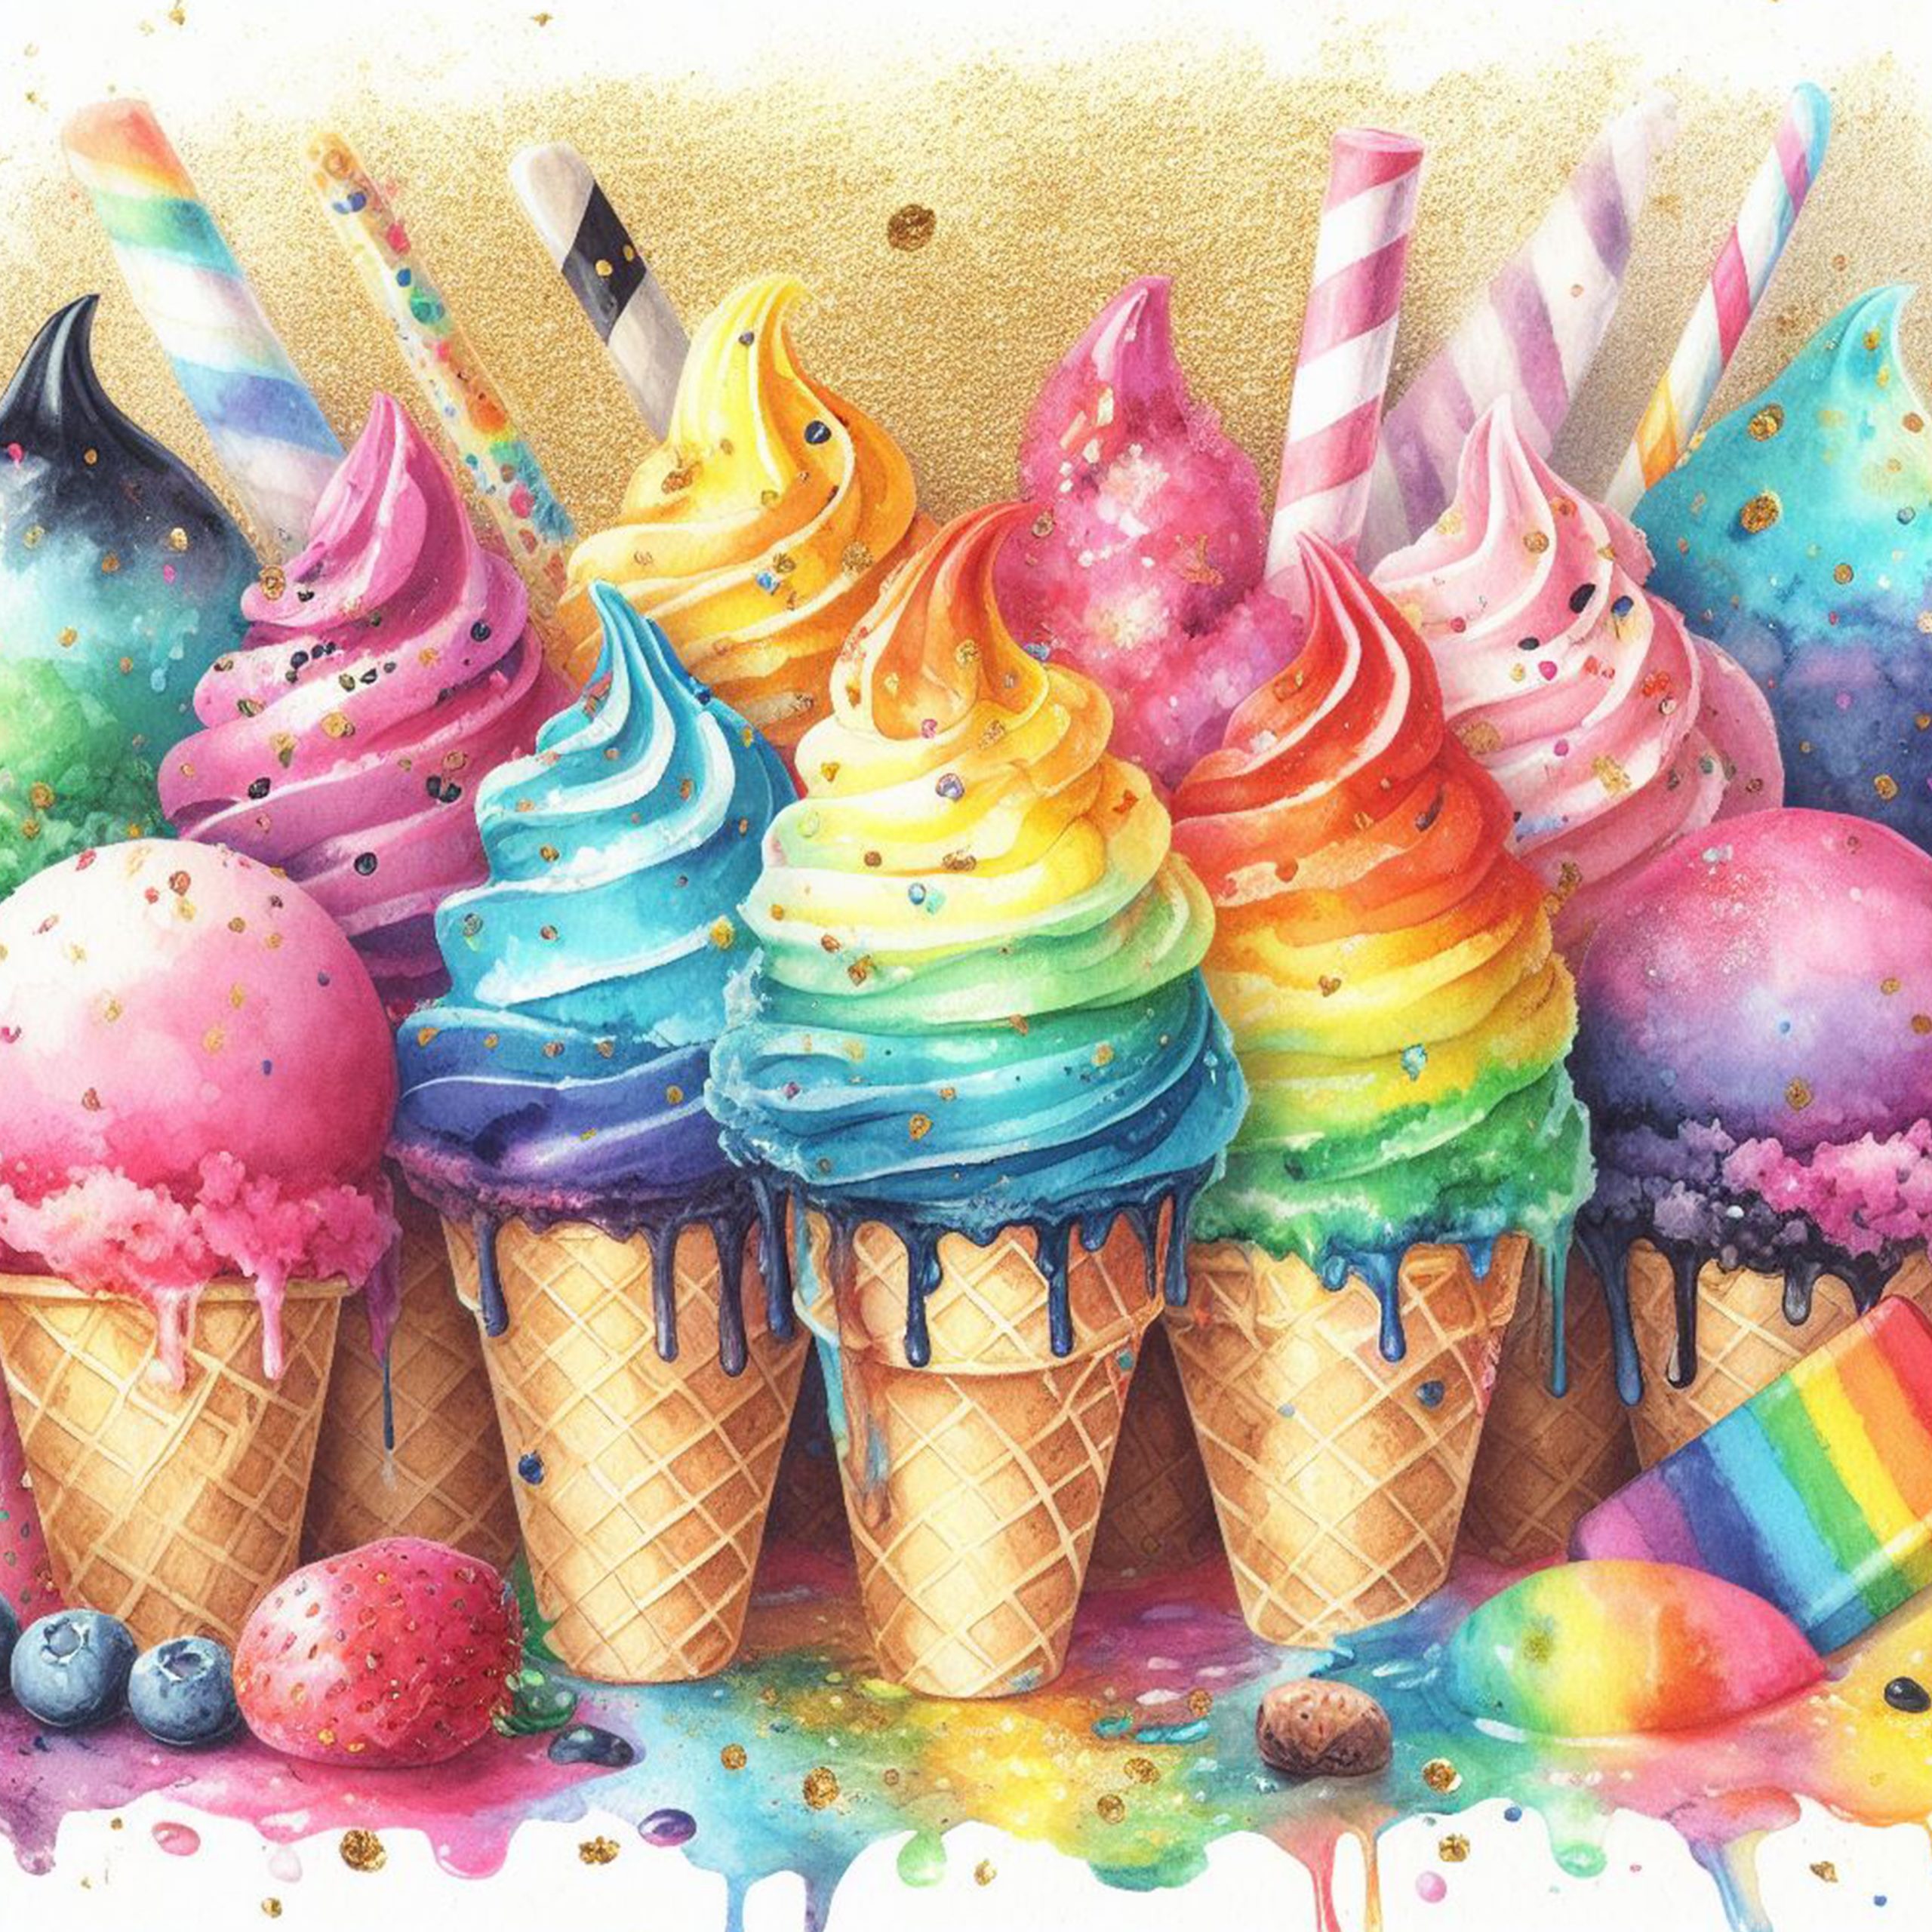 Imagen de hermosos helados de colores vibrantes y arcoiris